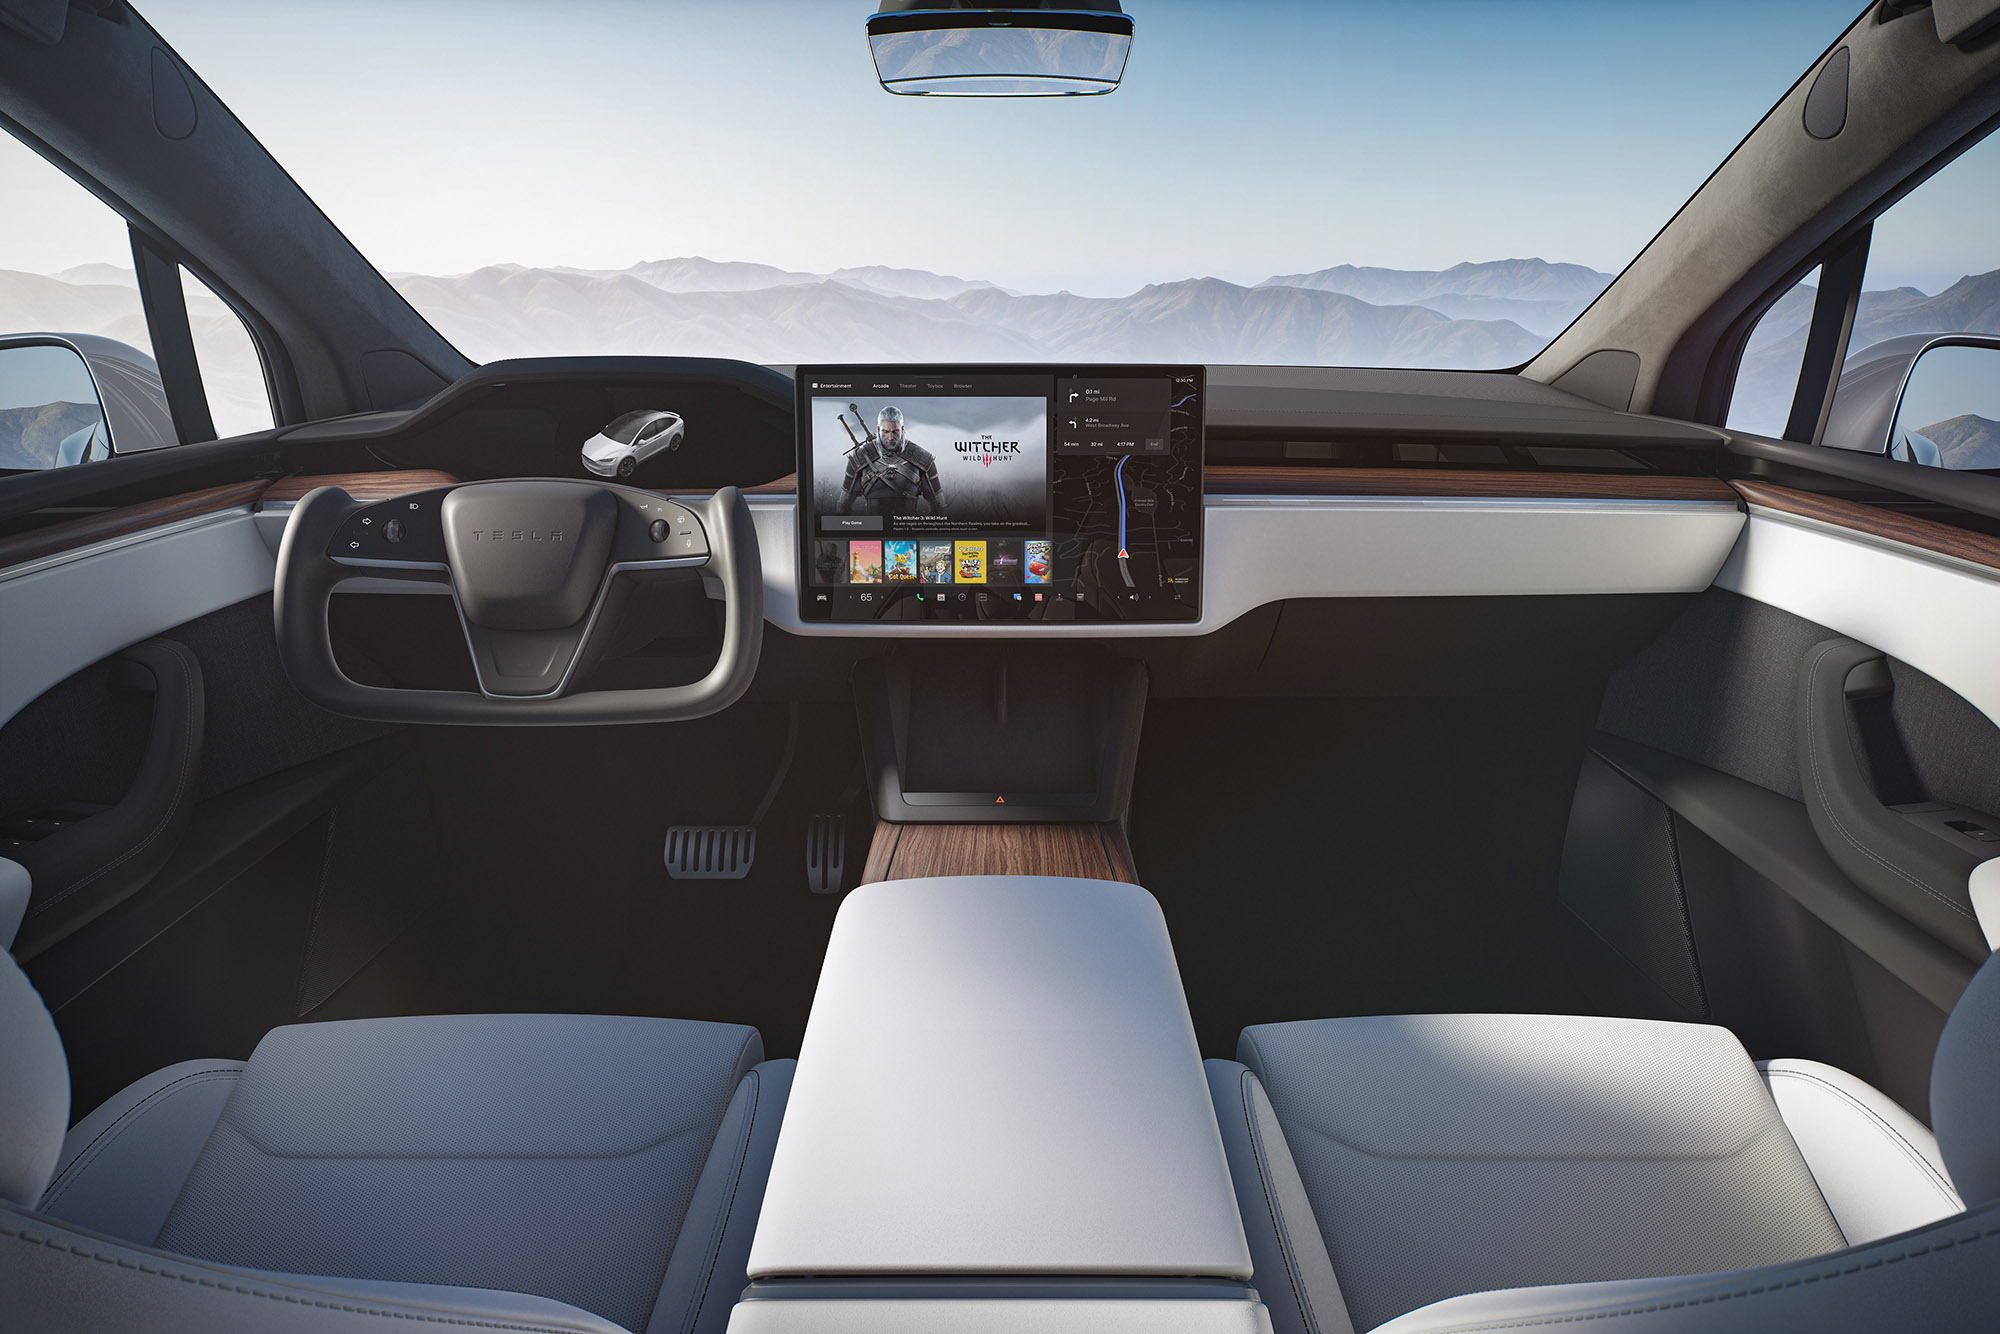 Tesla Model X interior in white.